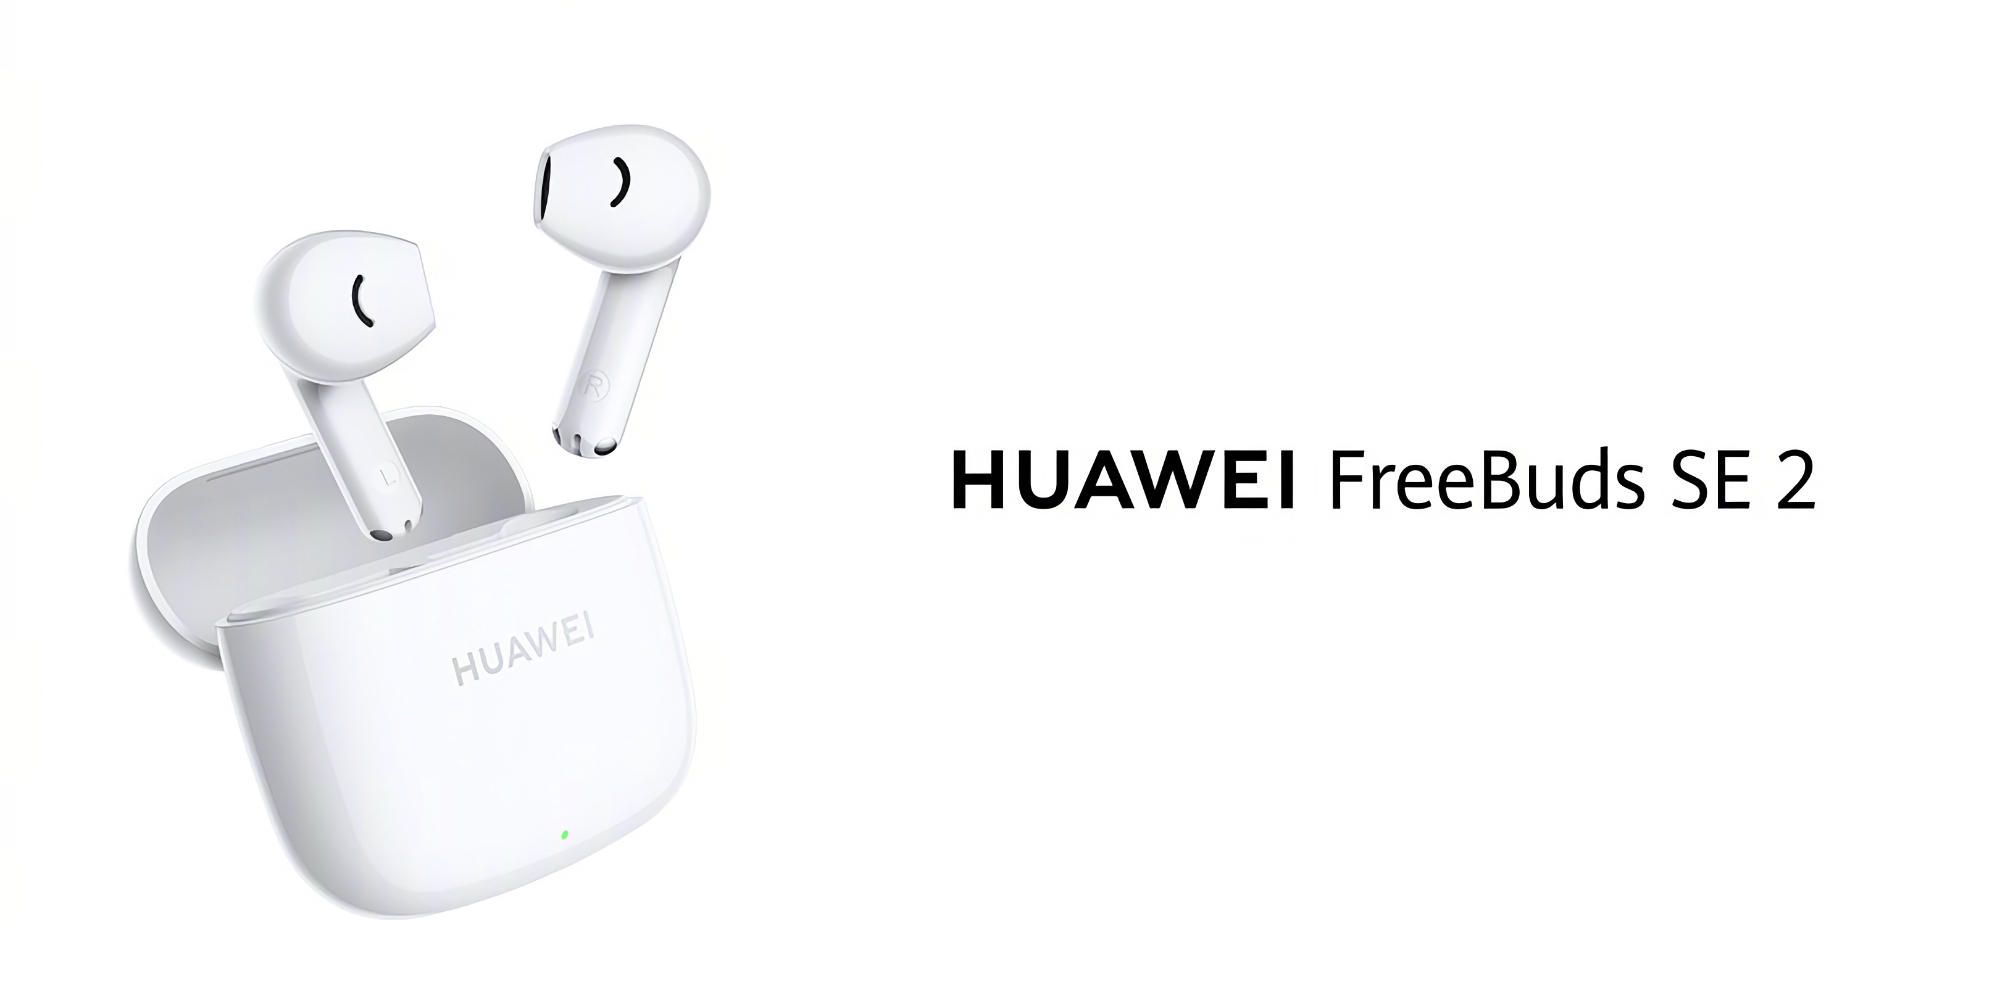 Huawei wprowadza na rynek słuchawki FreeBuds SE 2 TWS o żywotności baterii do 40 godzin w cenie 24 USD